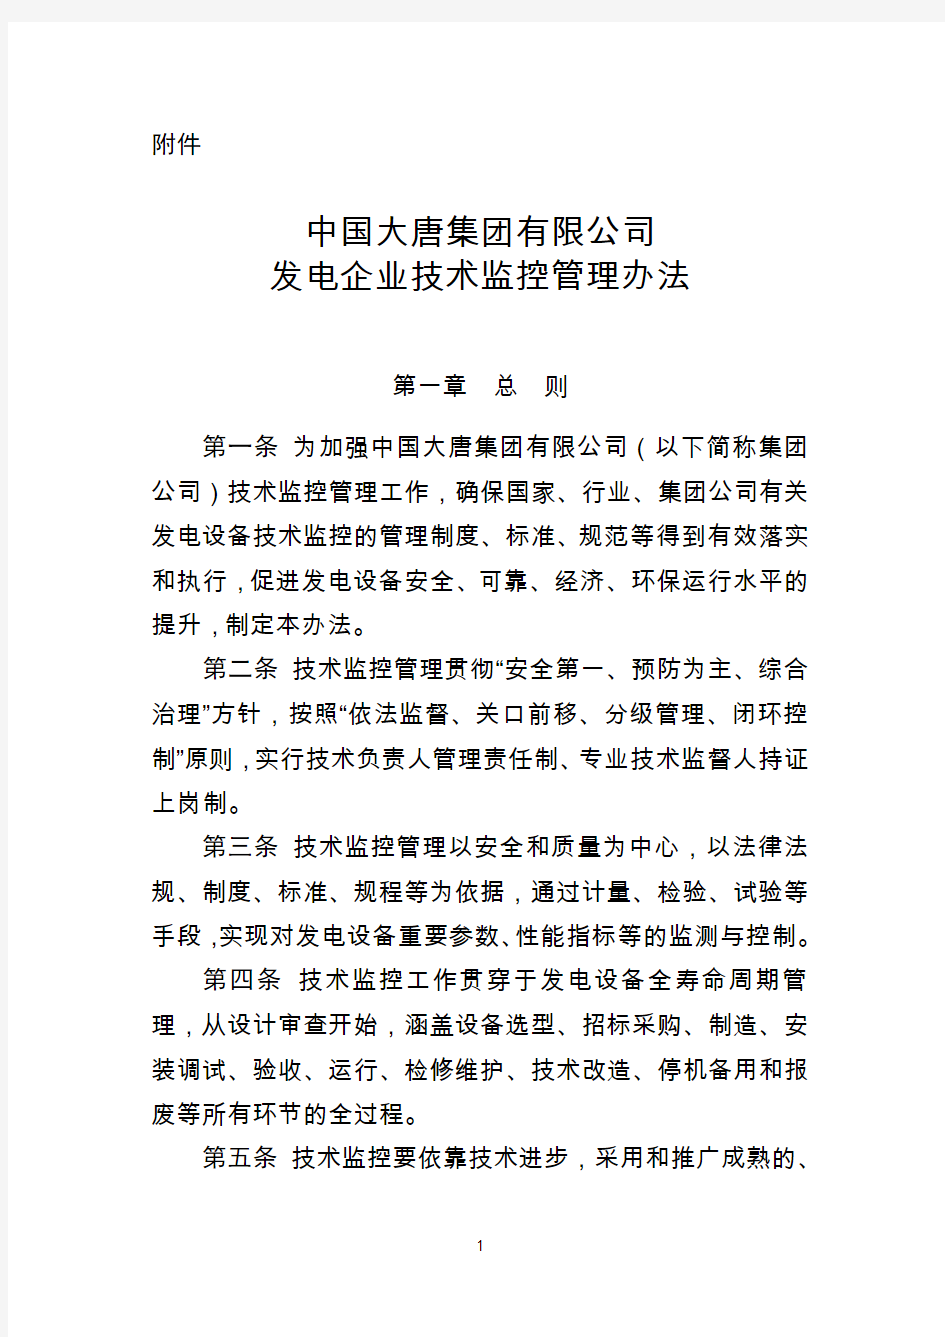 中国大唐集团有限公司发电企业技术监控管理办法